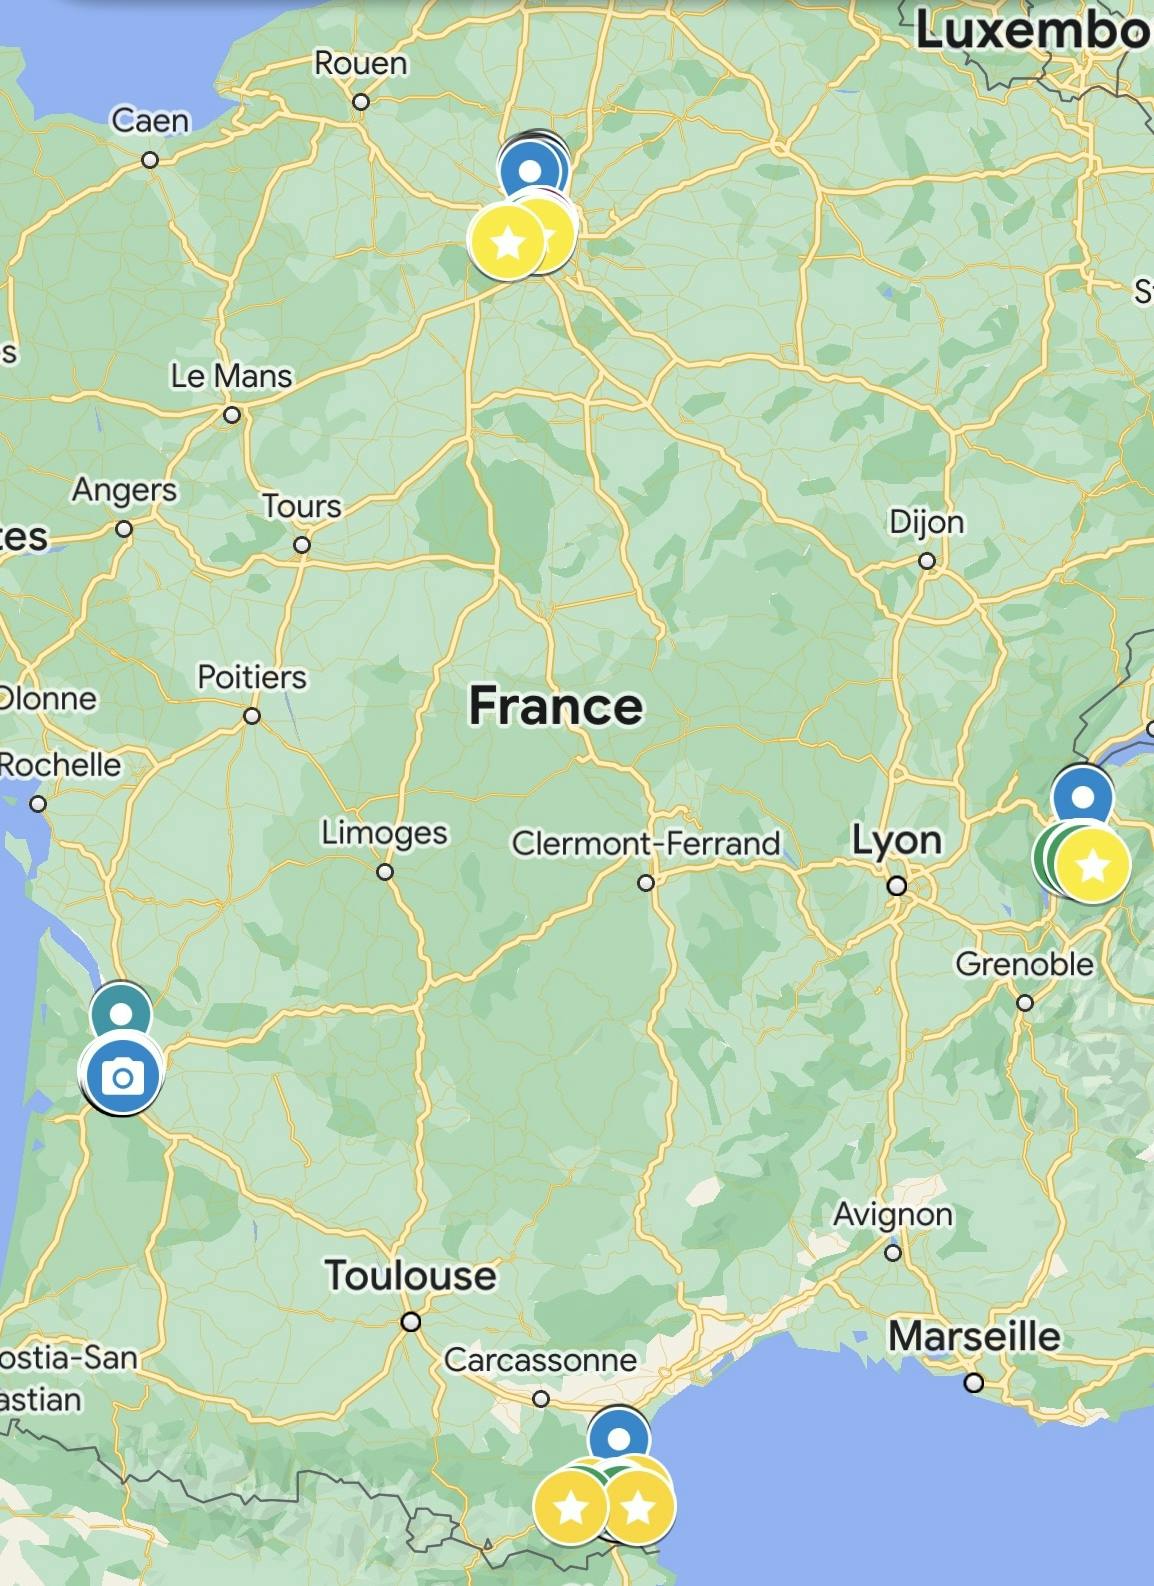 France Google Map Legend